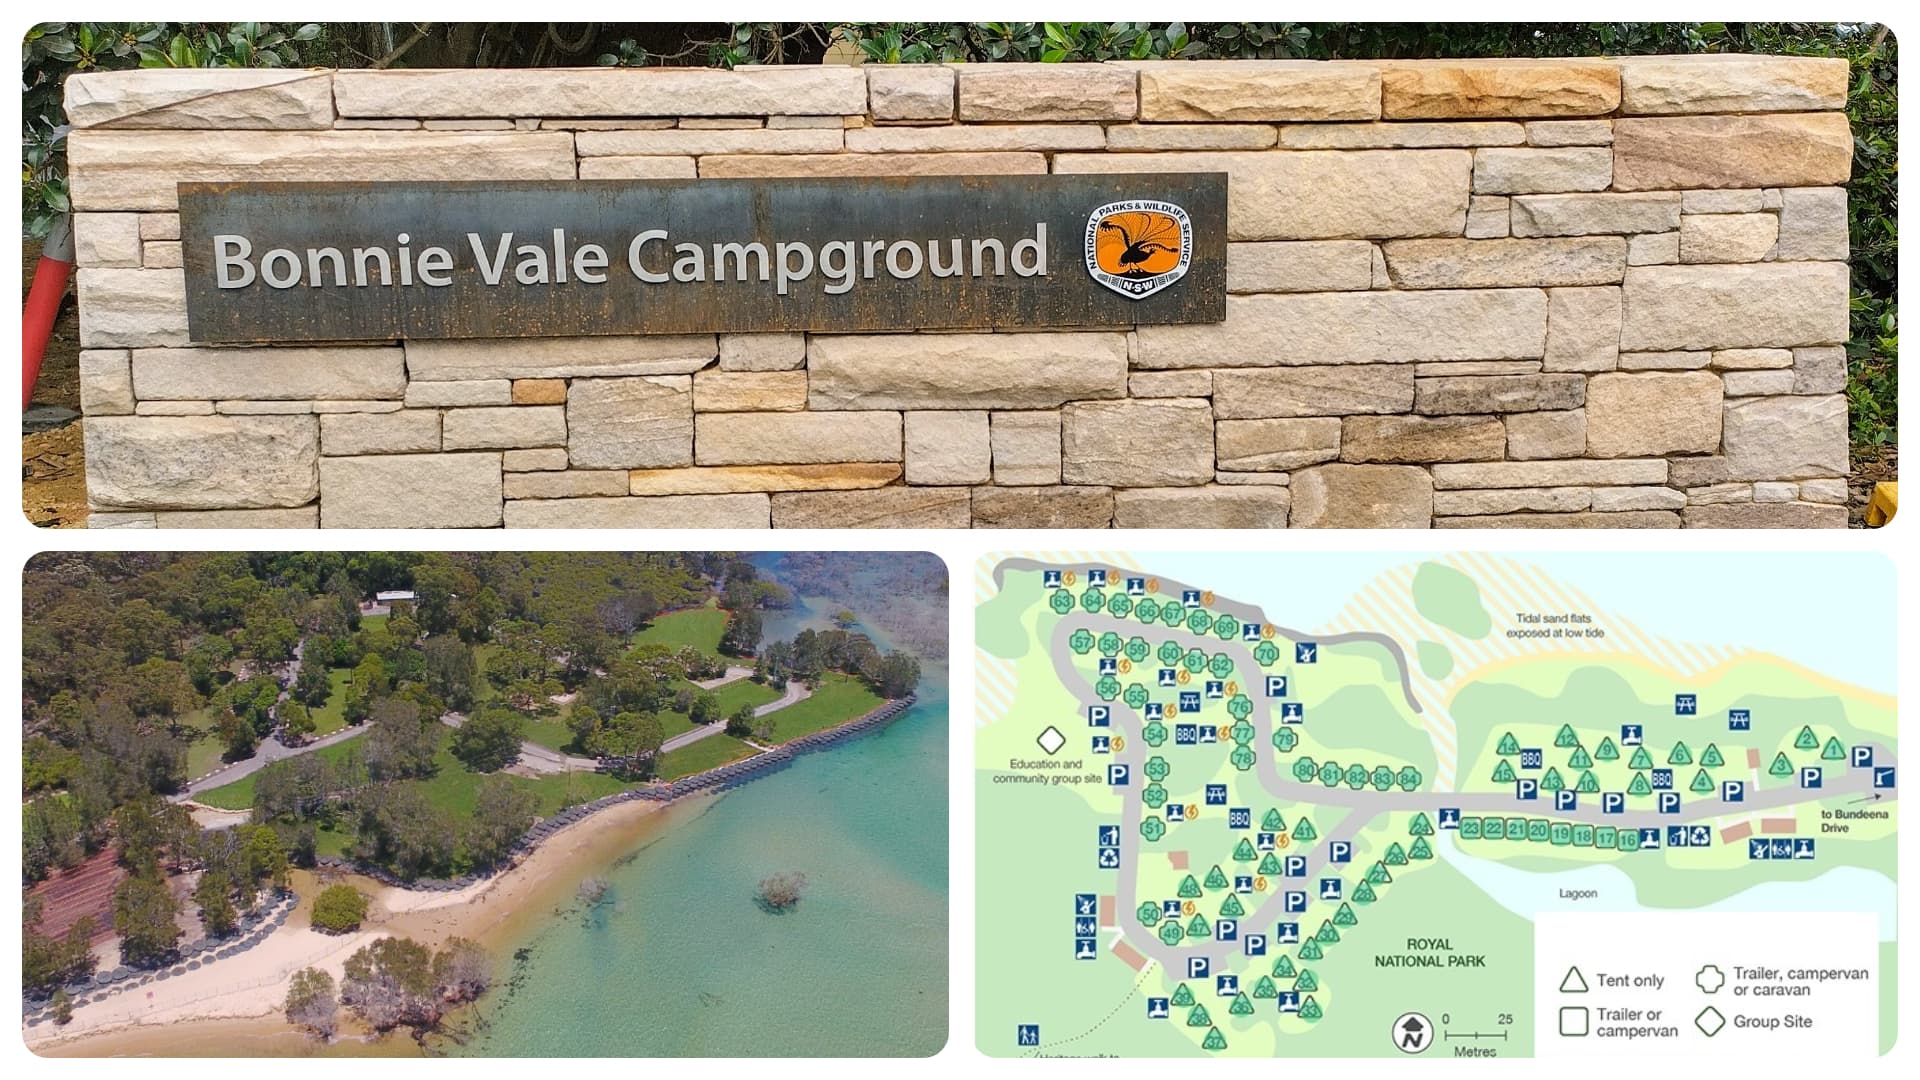 Bonnie Vale Campground Update